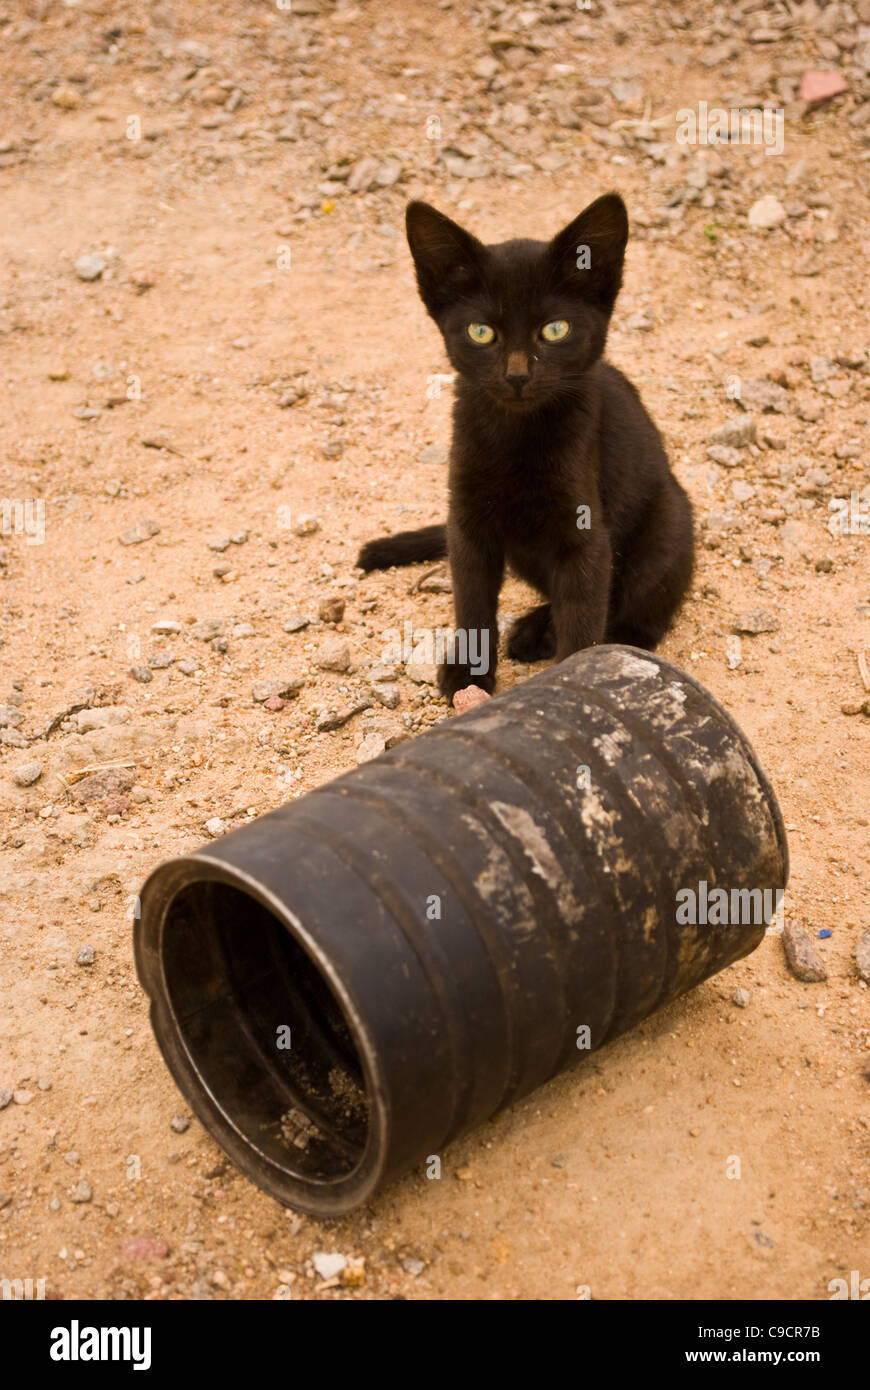 Un affamato gattino accanto a vuoto stagno alimentare a Bulawayo, Zimbabwe. Animali domestici vivono di qualunque sfridi possono trovare. Foto Stock